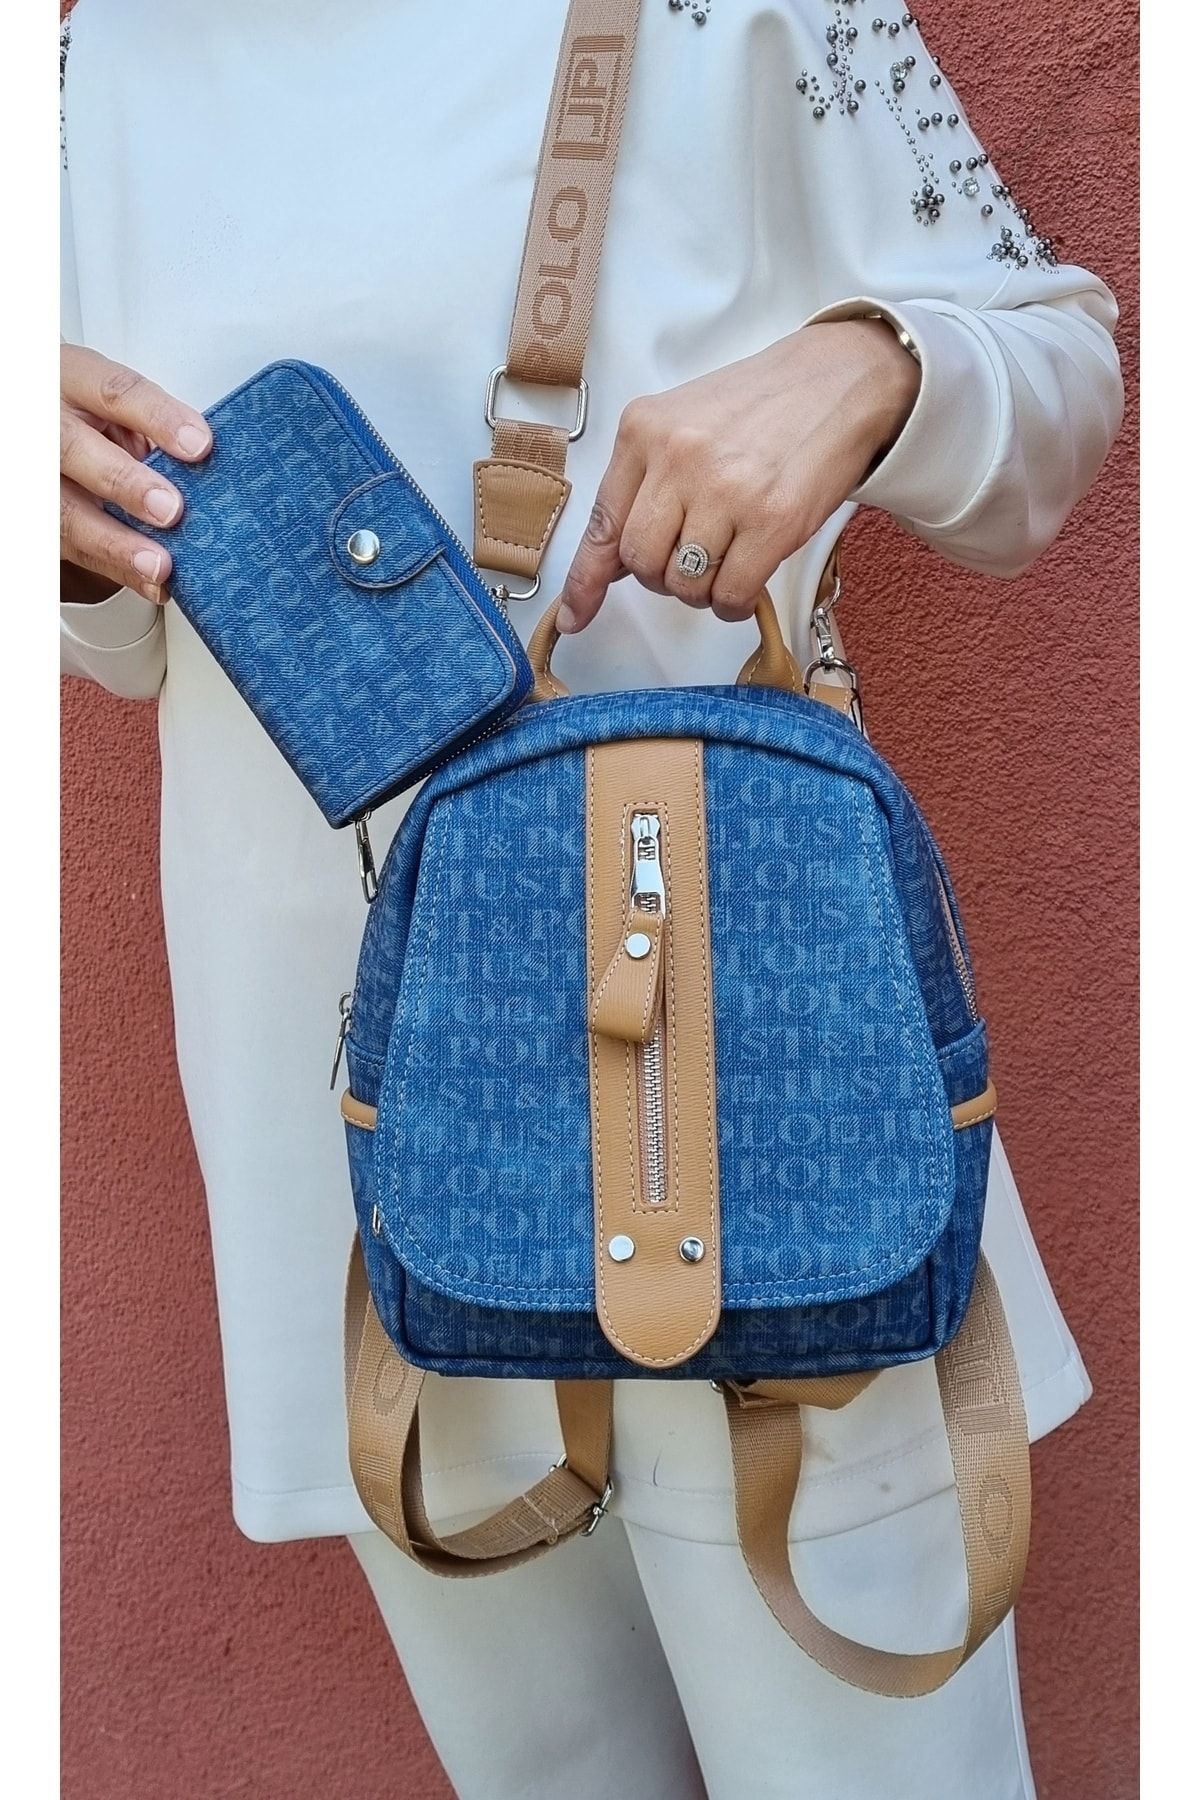 Just Polo justpolo kadın kot rengi monogram baskılı sırt ve omuz çantası ve cüzdan kombini